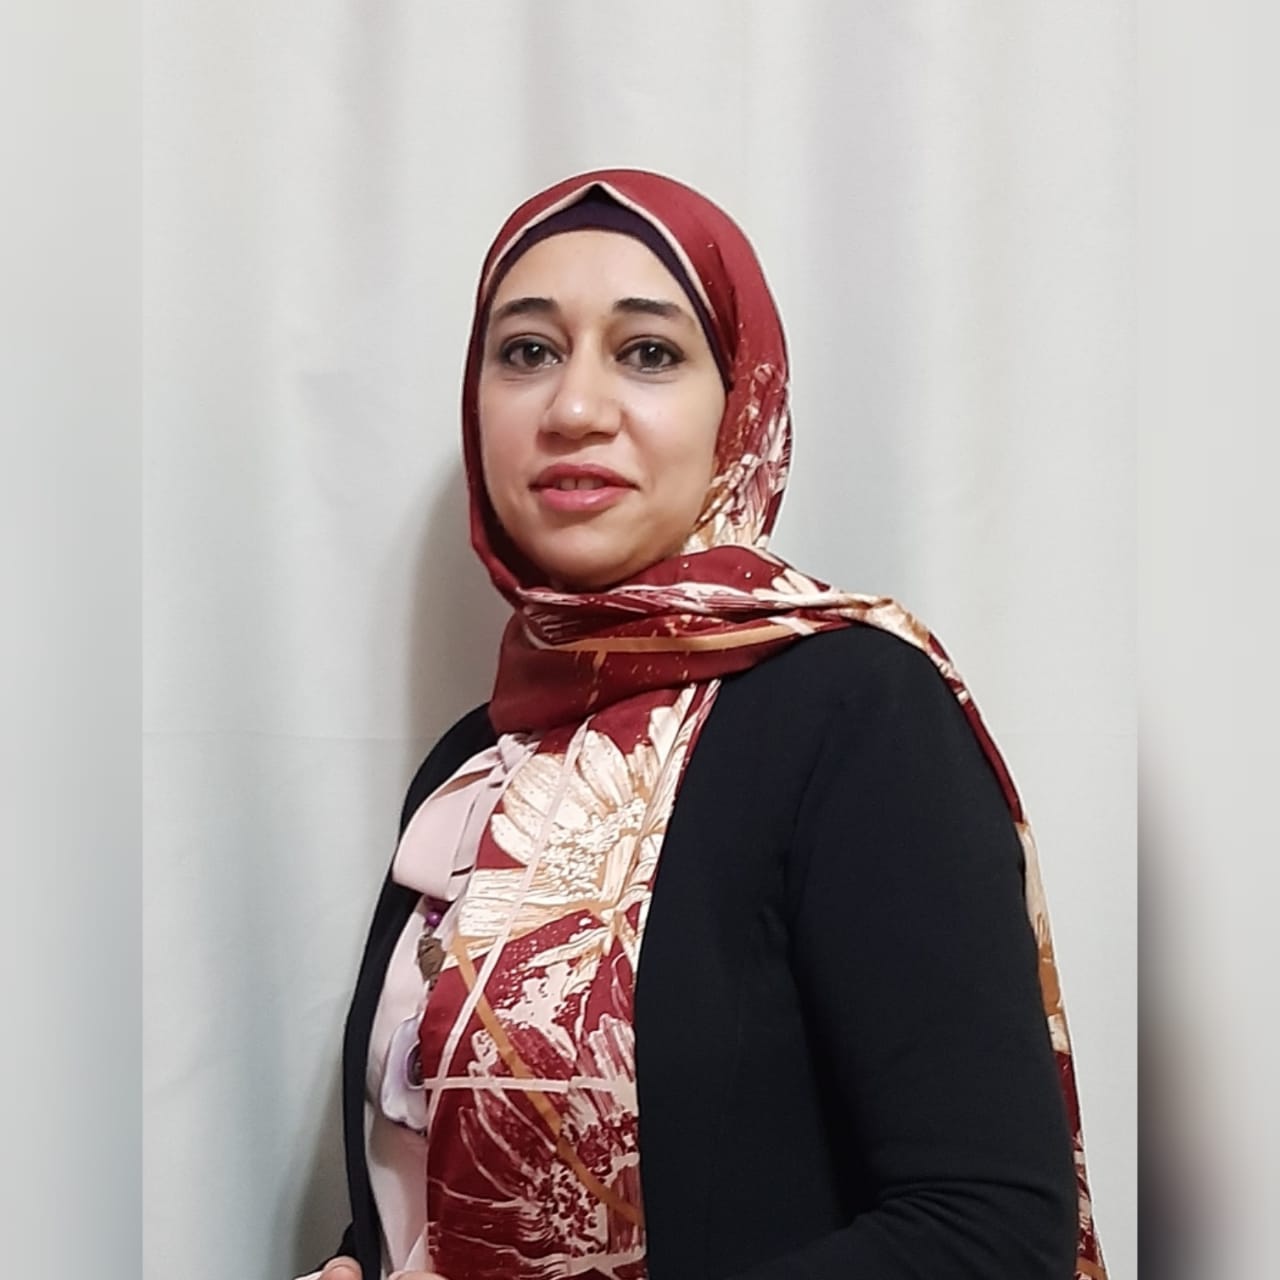 Dr. Omnia Al-Saadouni